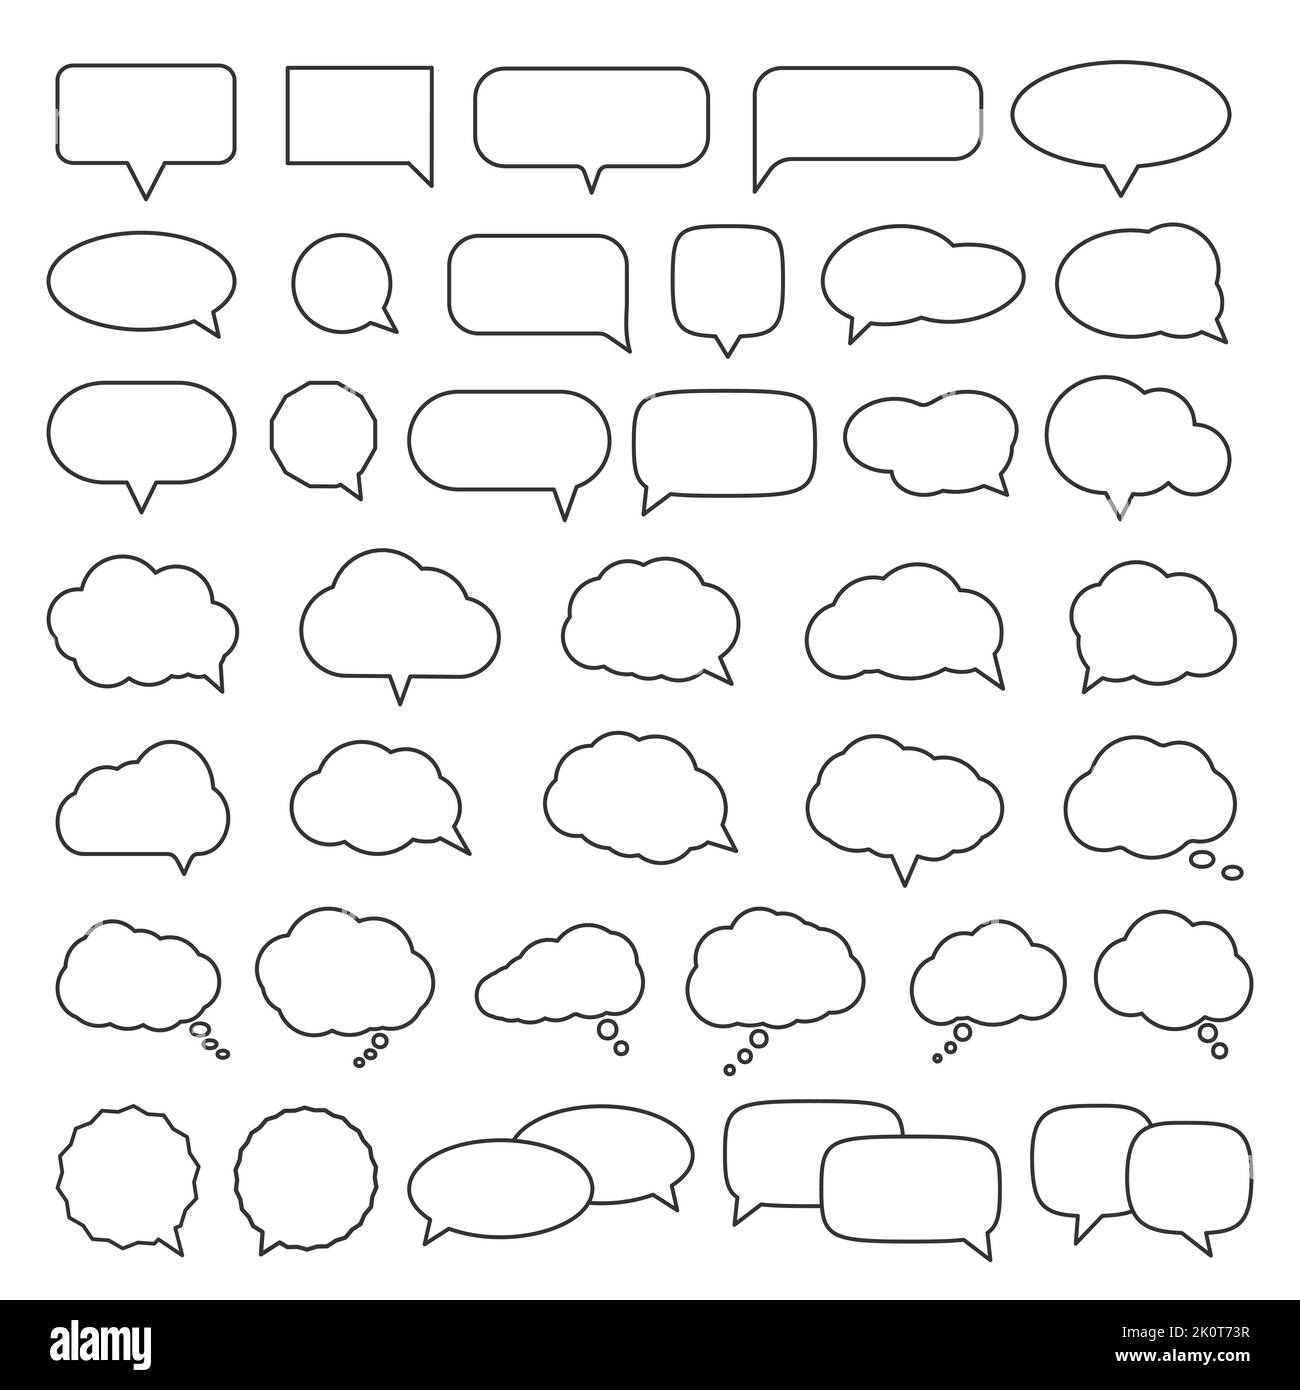 grande collection de bulles de parole isolées sur fond blanc, illustration vectorielle Illustration de Vecteur